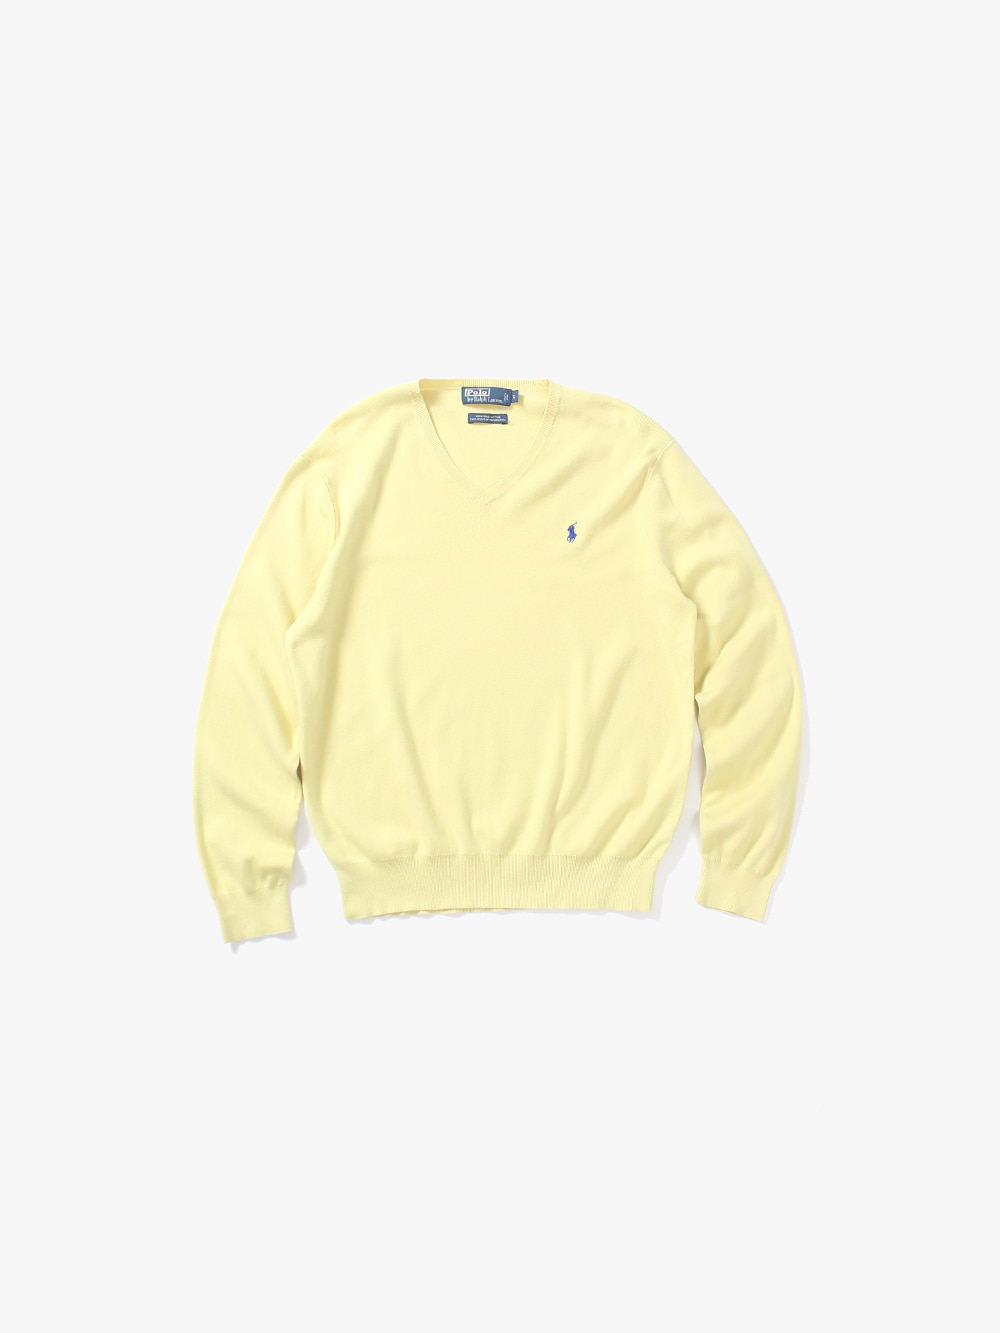 [ L ] Polo Ralph Lauren Sweater (6277)